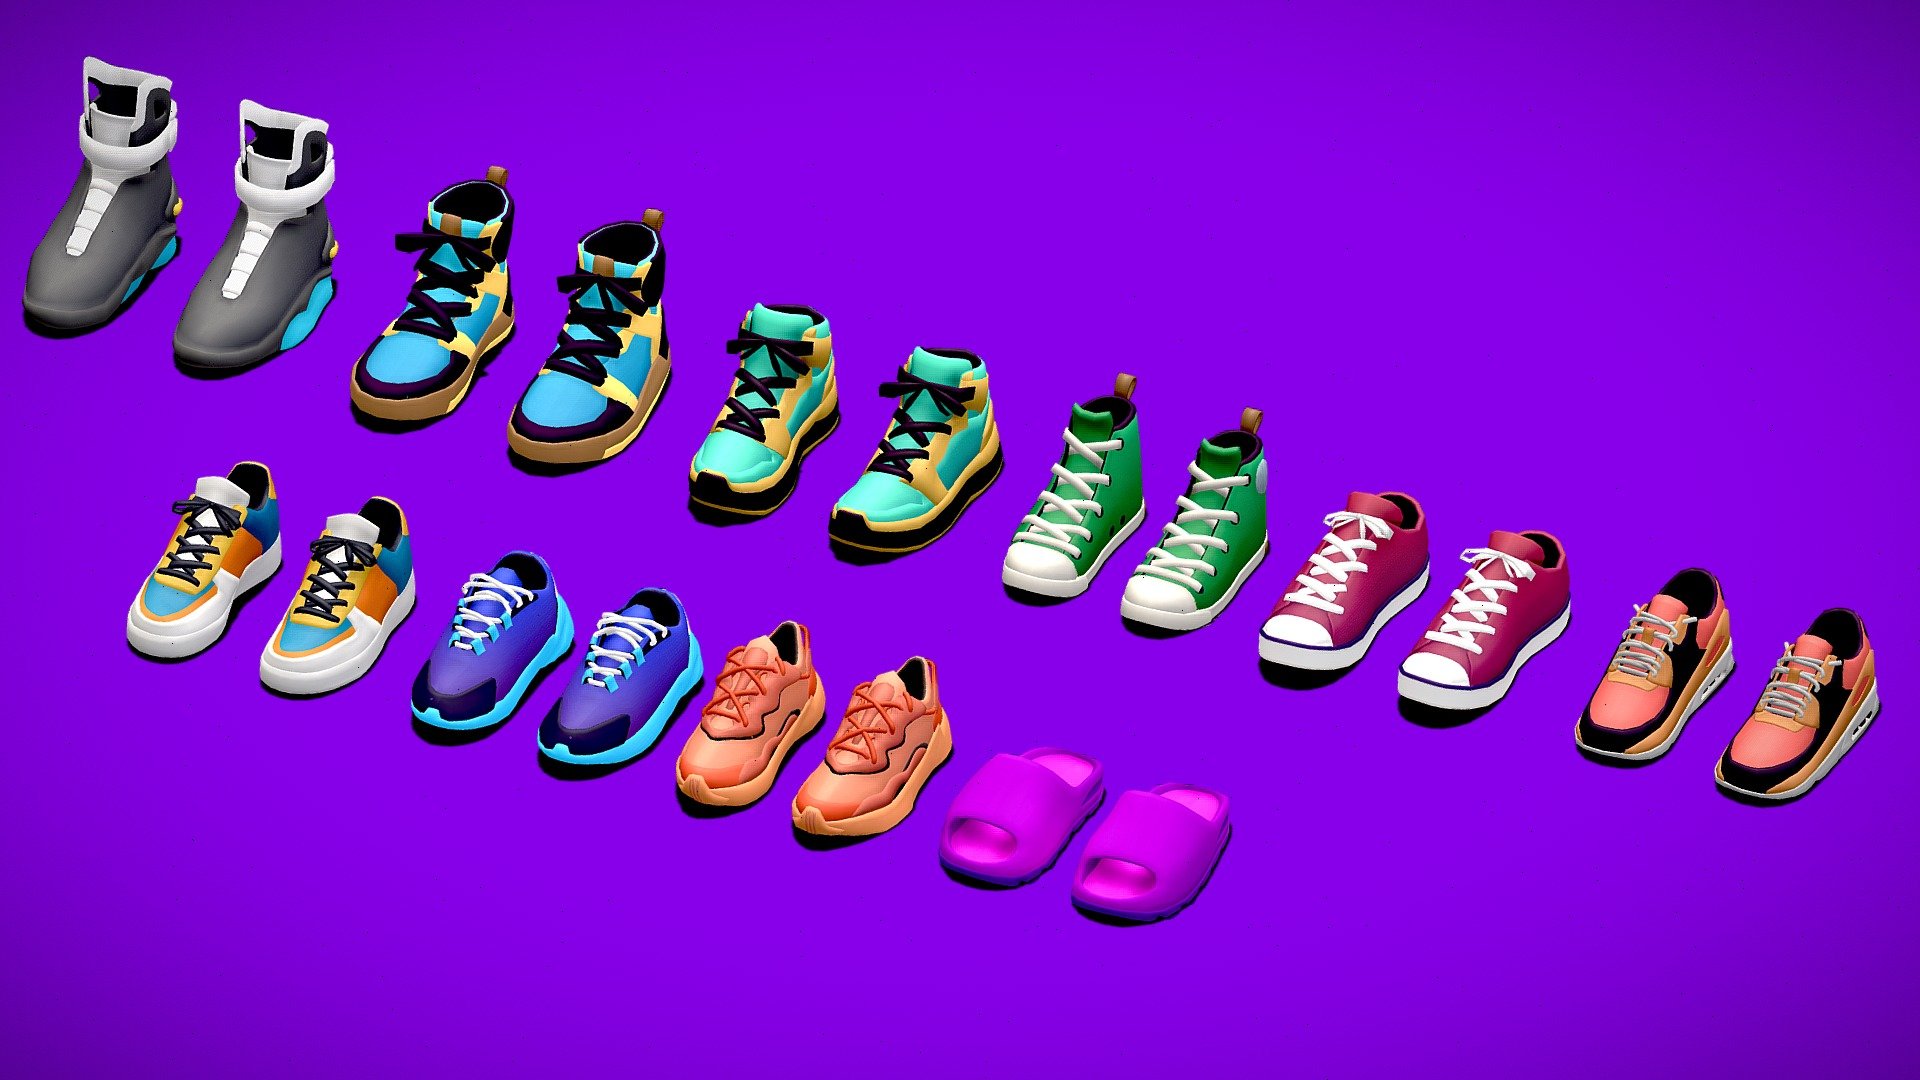 Sneakers-Games-Package - 3D model by Look Games (@mustafakasap0) 3d model